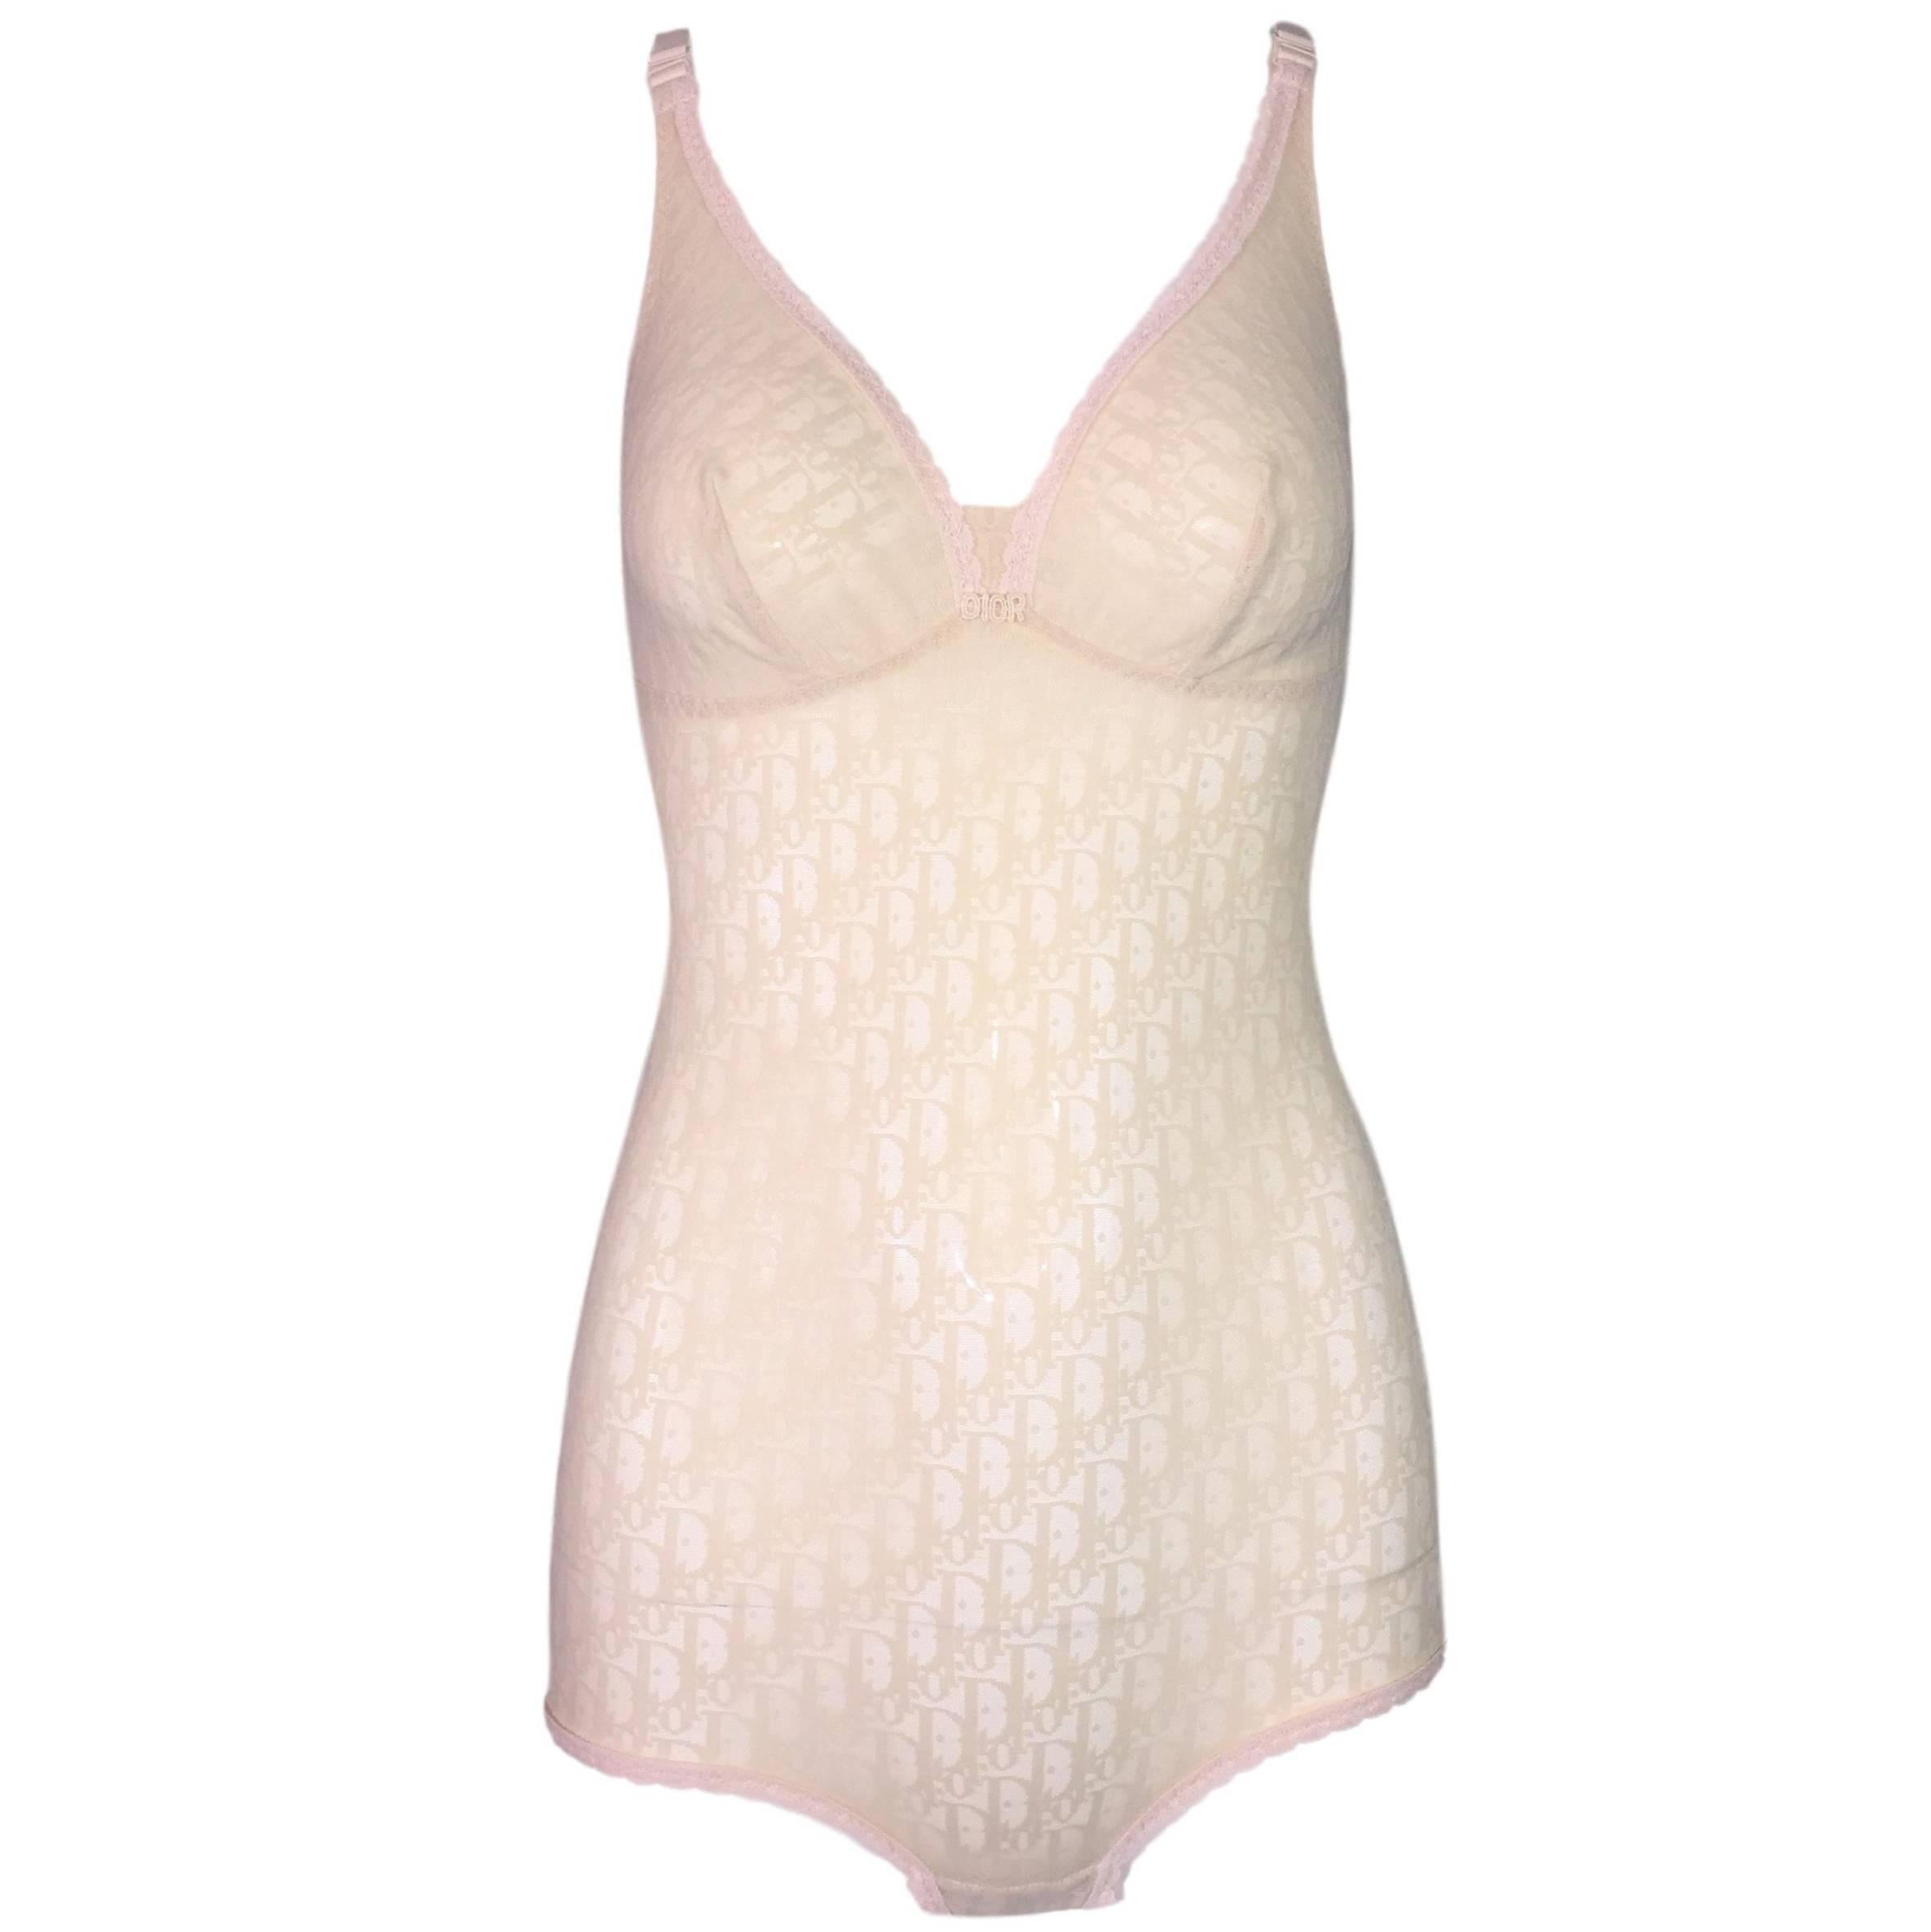 1990's Christian Dior Sheer Fair Skin Nude Monogram Mesh Bodysuit Top